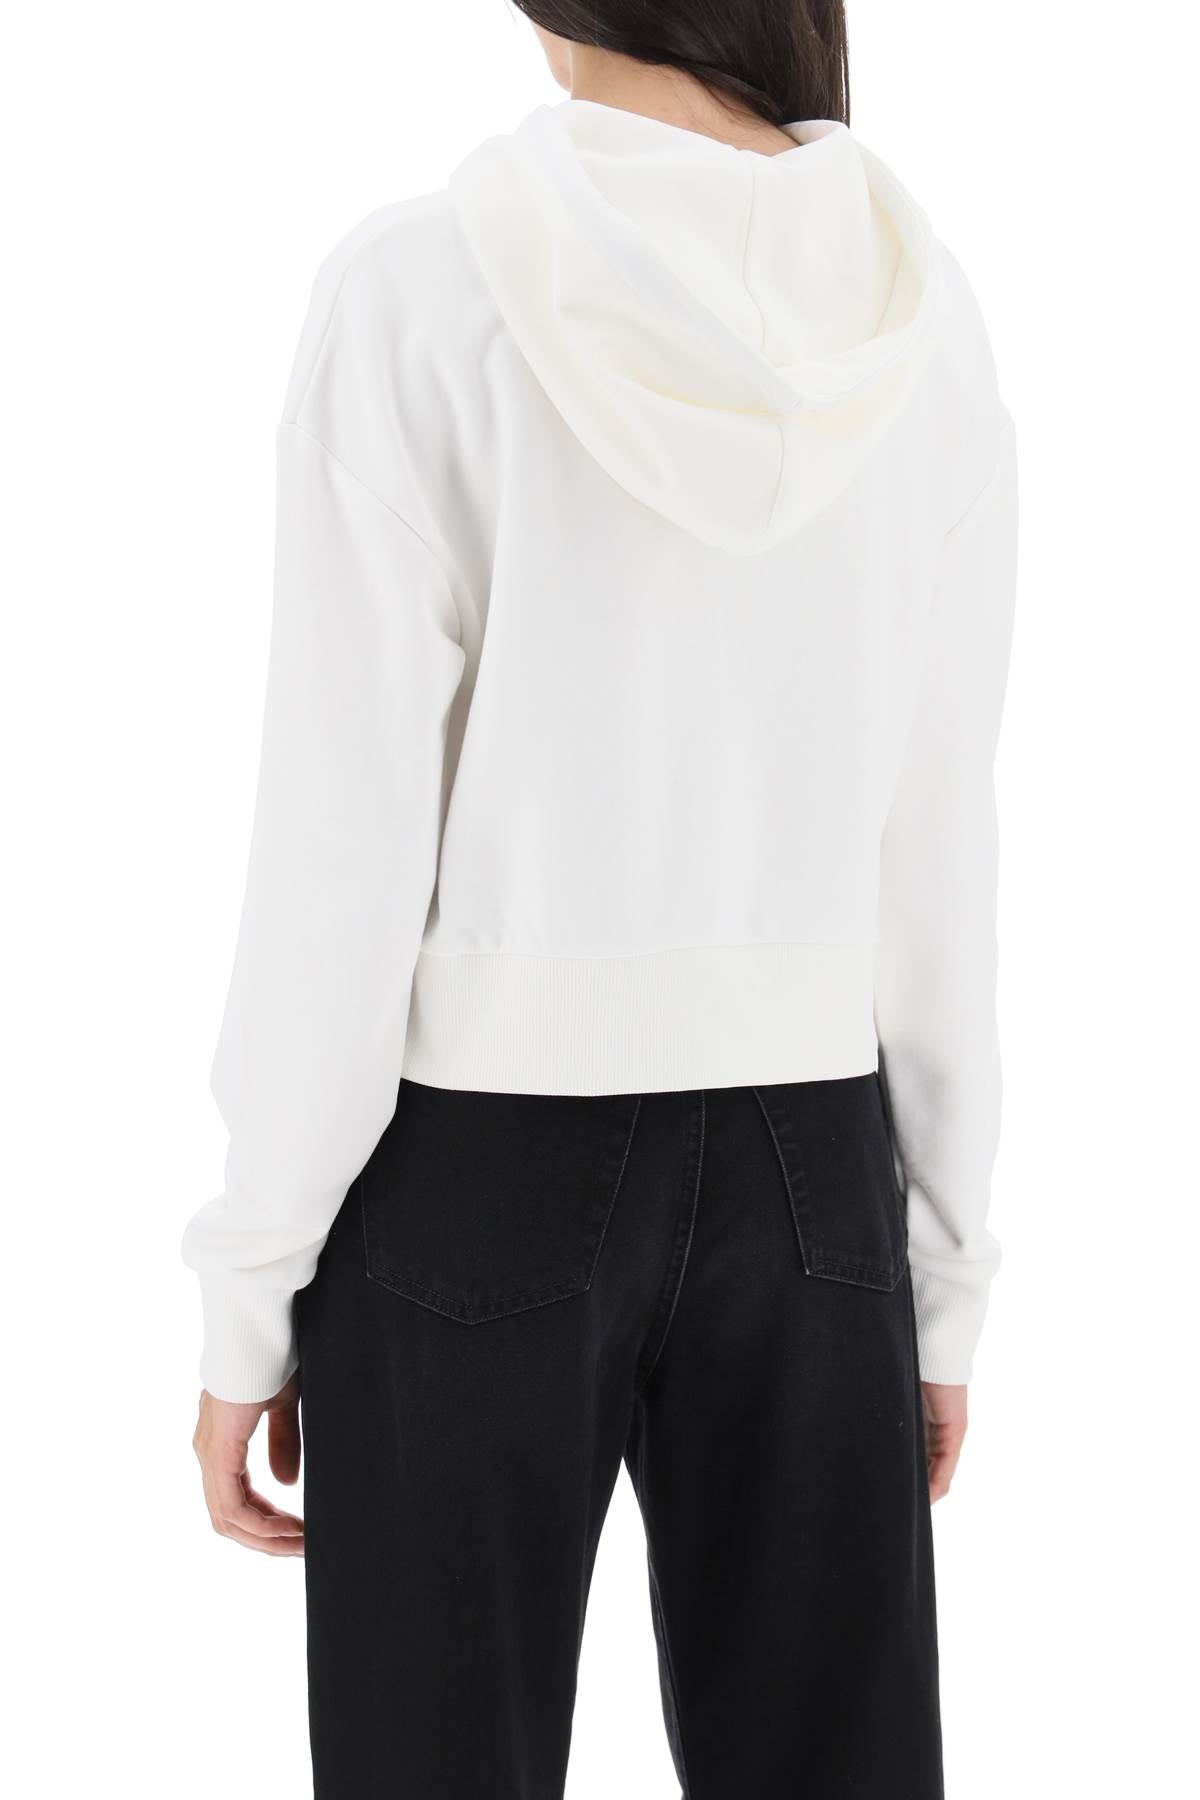 Áo len dài tay cho nữ có hình in chữ Tuyệt đẹp và đường cắt ngang ở màu trắng